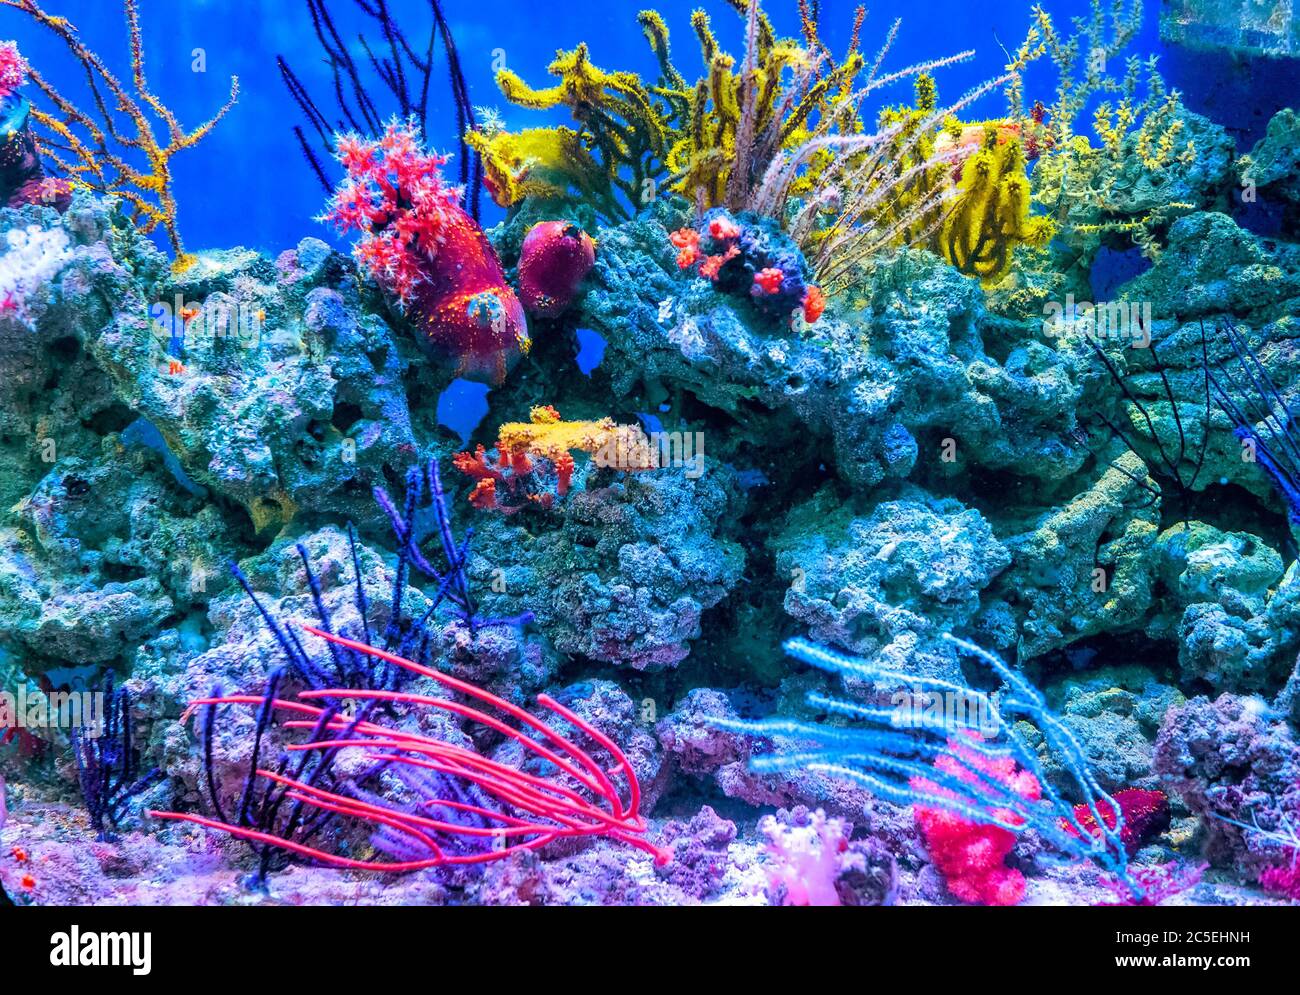 Korallenriff Aquarium Tank für Hintergrund. Erstaunlich farbenfrohe Meerwasseraquarium zu Hause. Schönes Aquarium für tropische Meerwasserfische aus nächster Nähe. Stockfoto